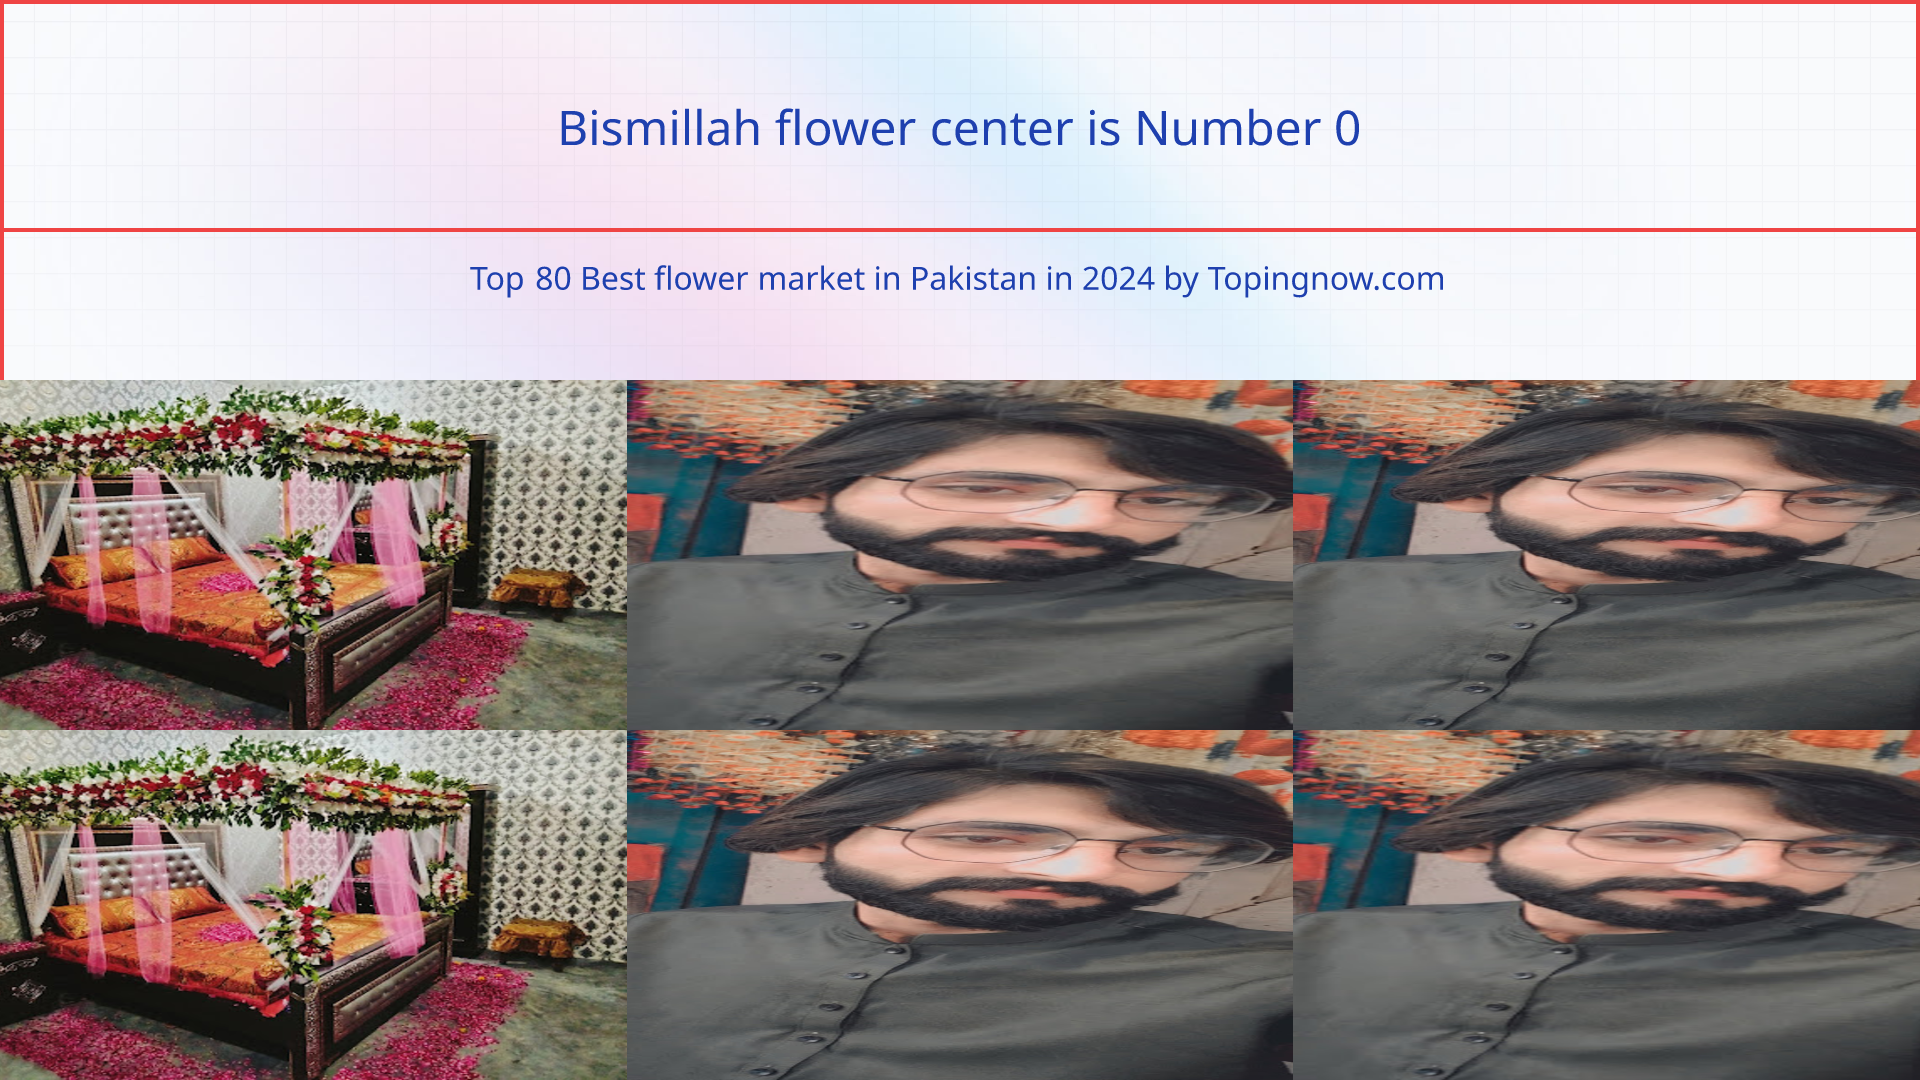 Bismillah flower center: Top 80 Best flower market in Pakistan in 2024